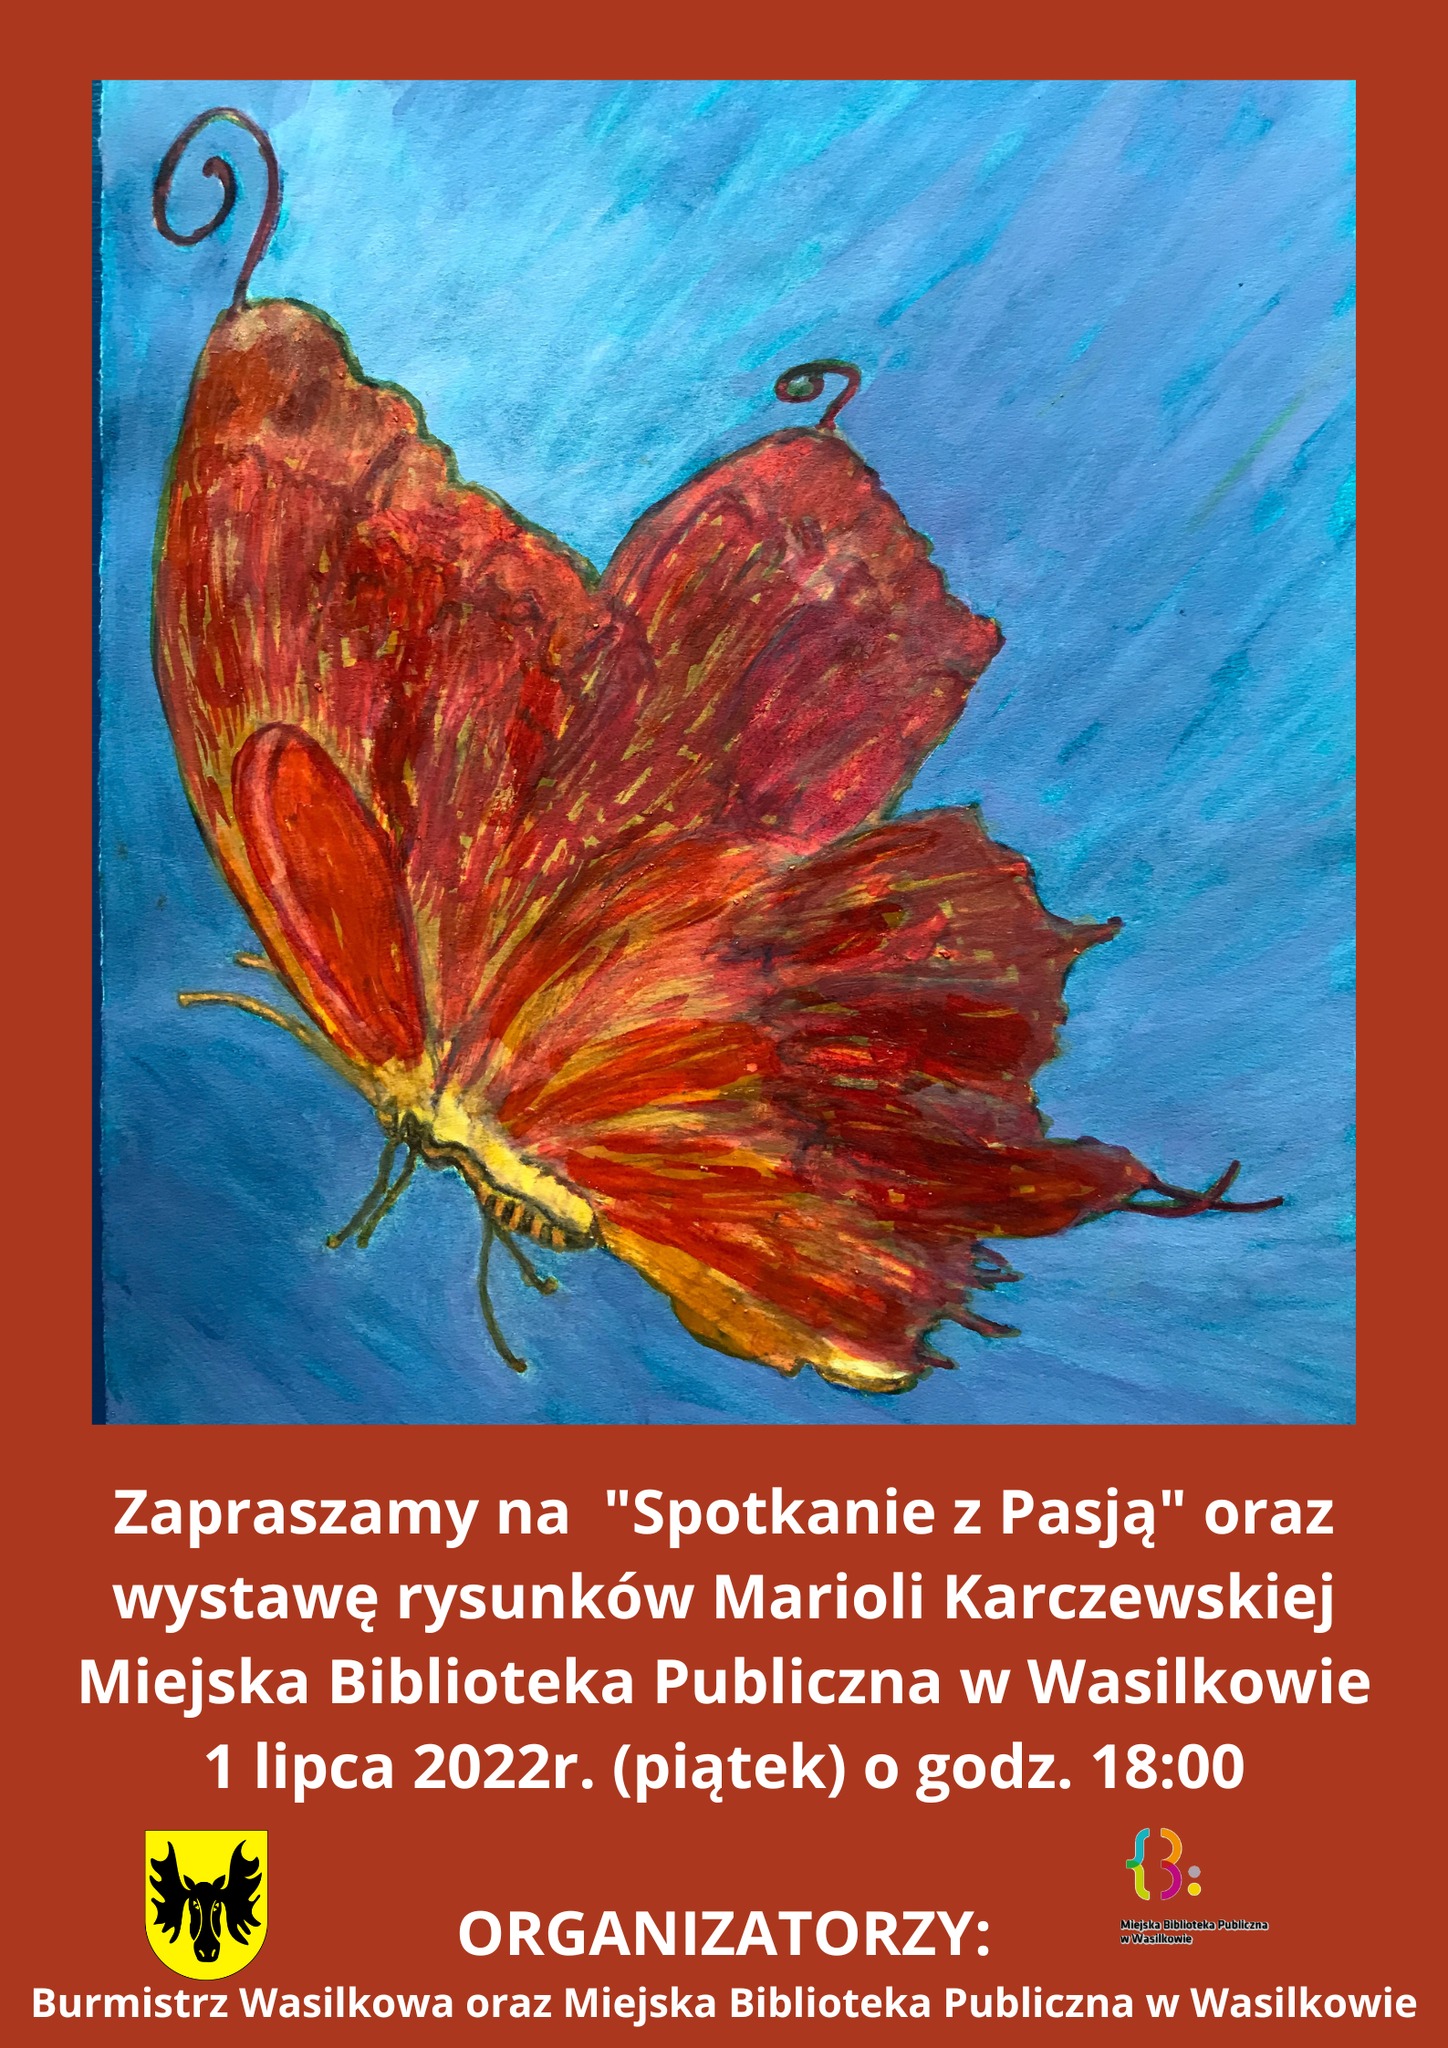 Plakat promujący spotkanie z Mariolą Karczewską